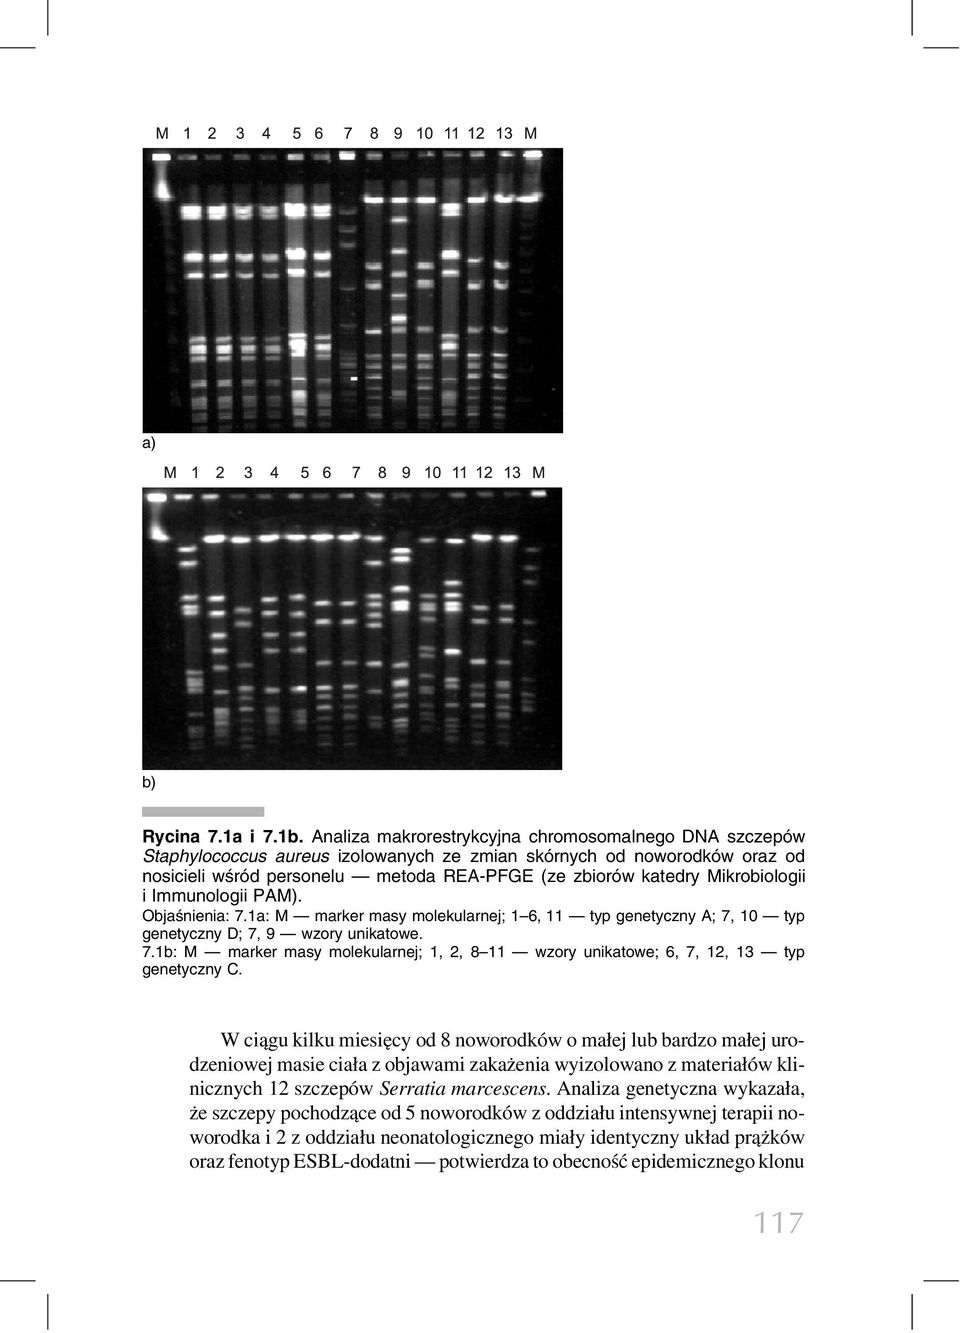 Mikrobiologii i Immunologii PAM). Objaśnienia: 7.1a: M marker masy molekularnej; 1 6, 11 typ genetyczny A; 7, 10 typ genetyczny D; 7, 9 wzory unikatowe. 7.1b: M marker masy molekularnej; 1, 2, 8 11 wzory unikatowe; 6, 7, 12, 13 typ genetyczny C.